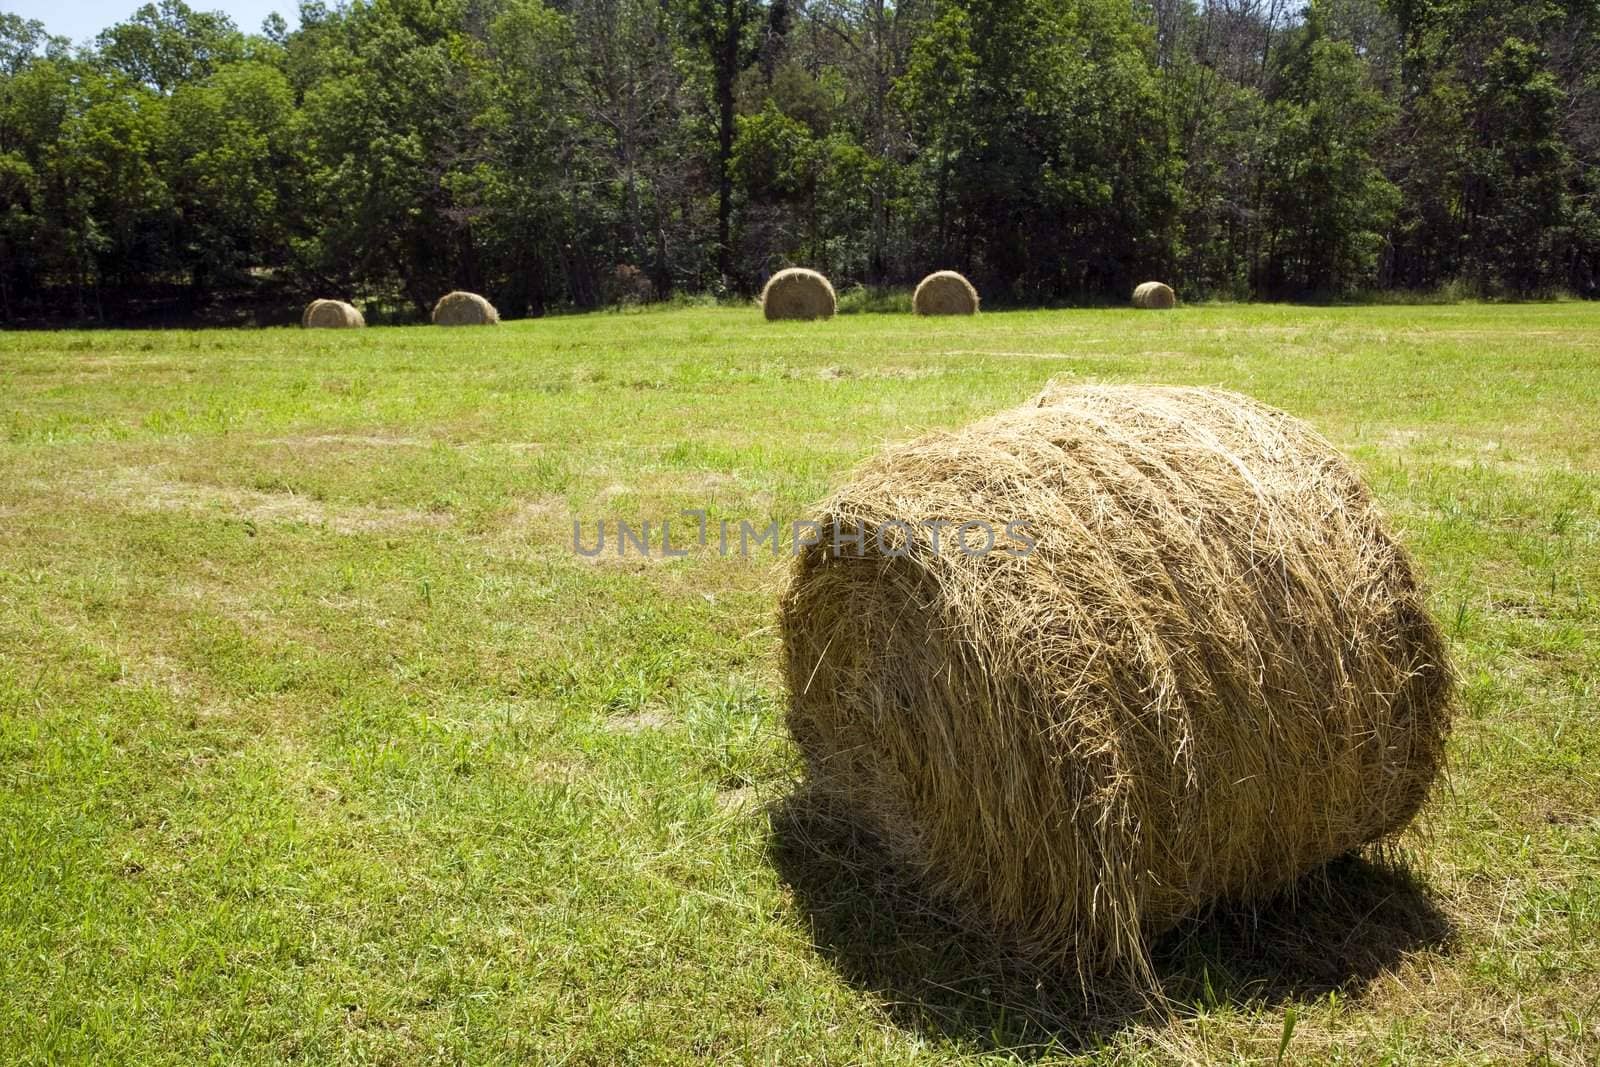 Hay bale in farm field.